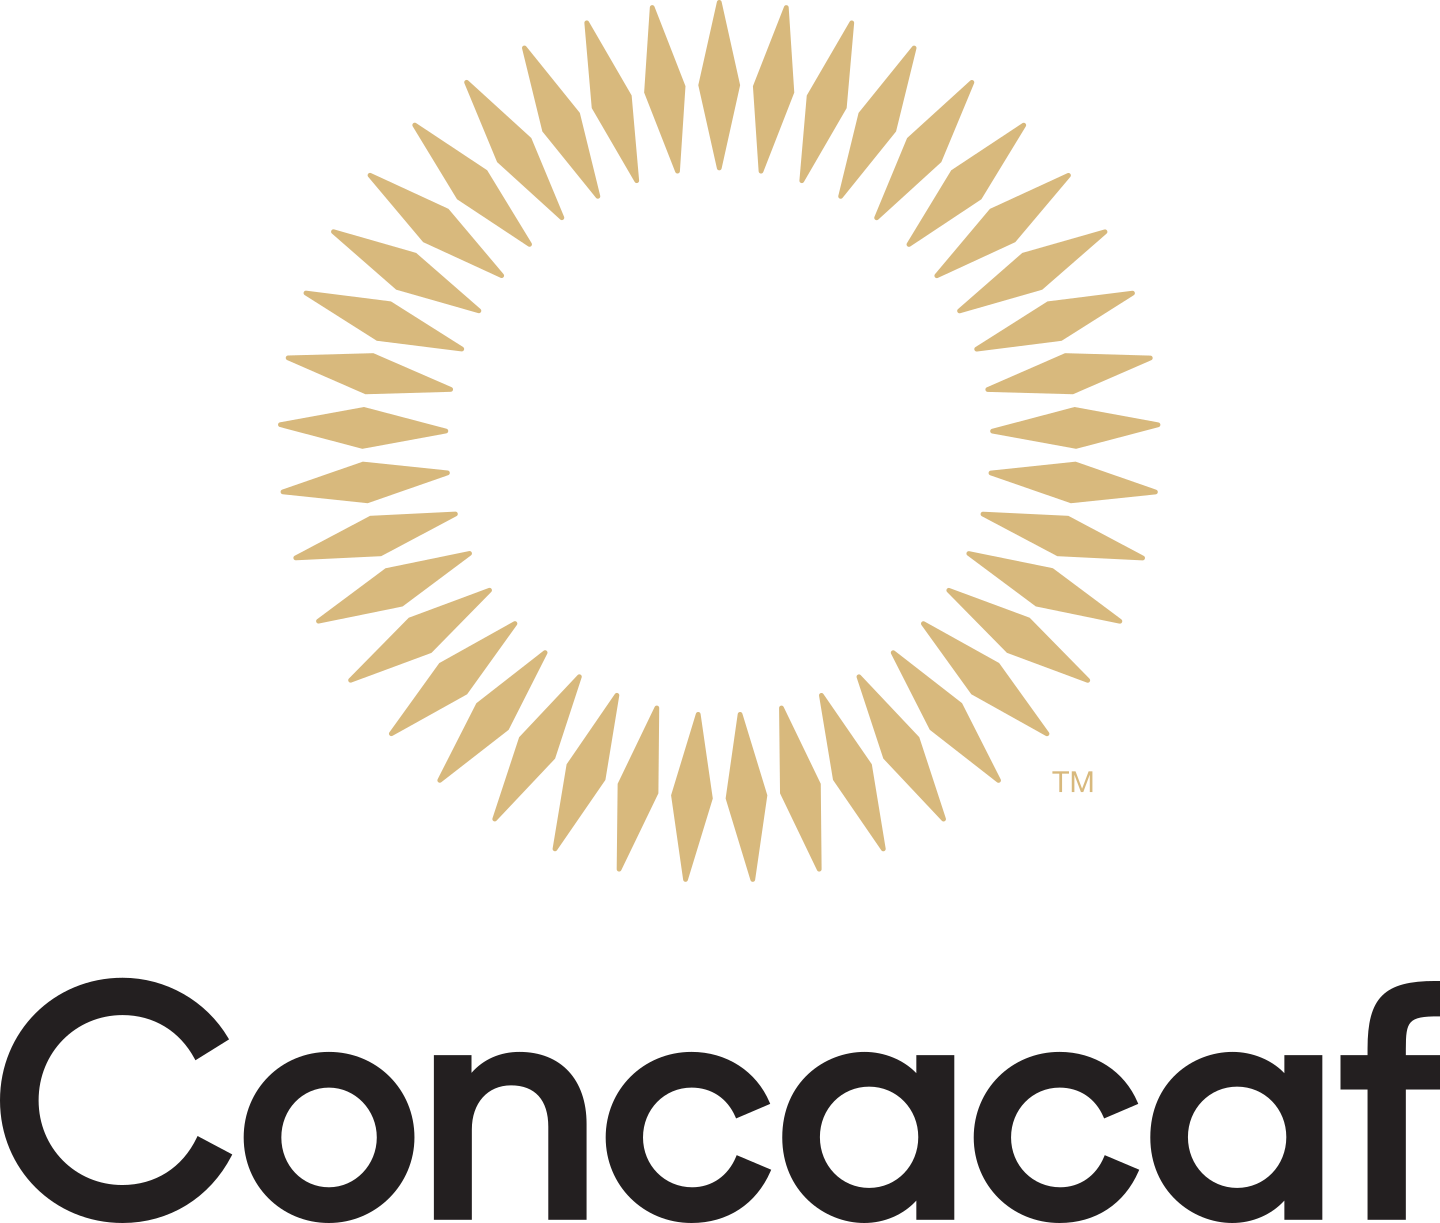 concacaf logo 3 - CONCACAF Logo